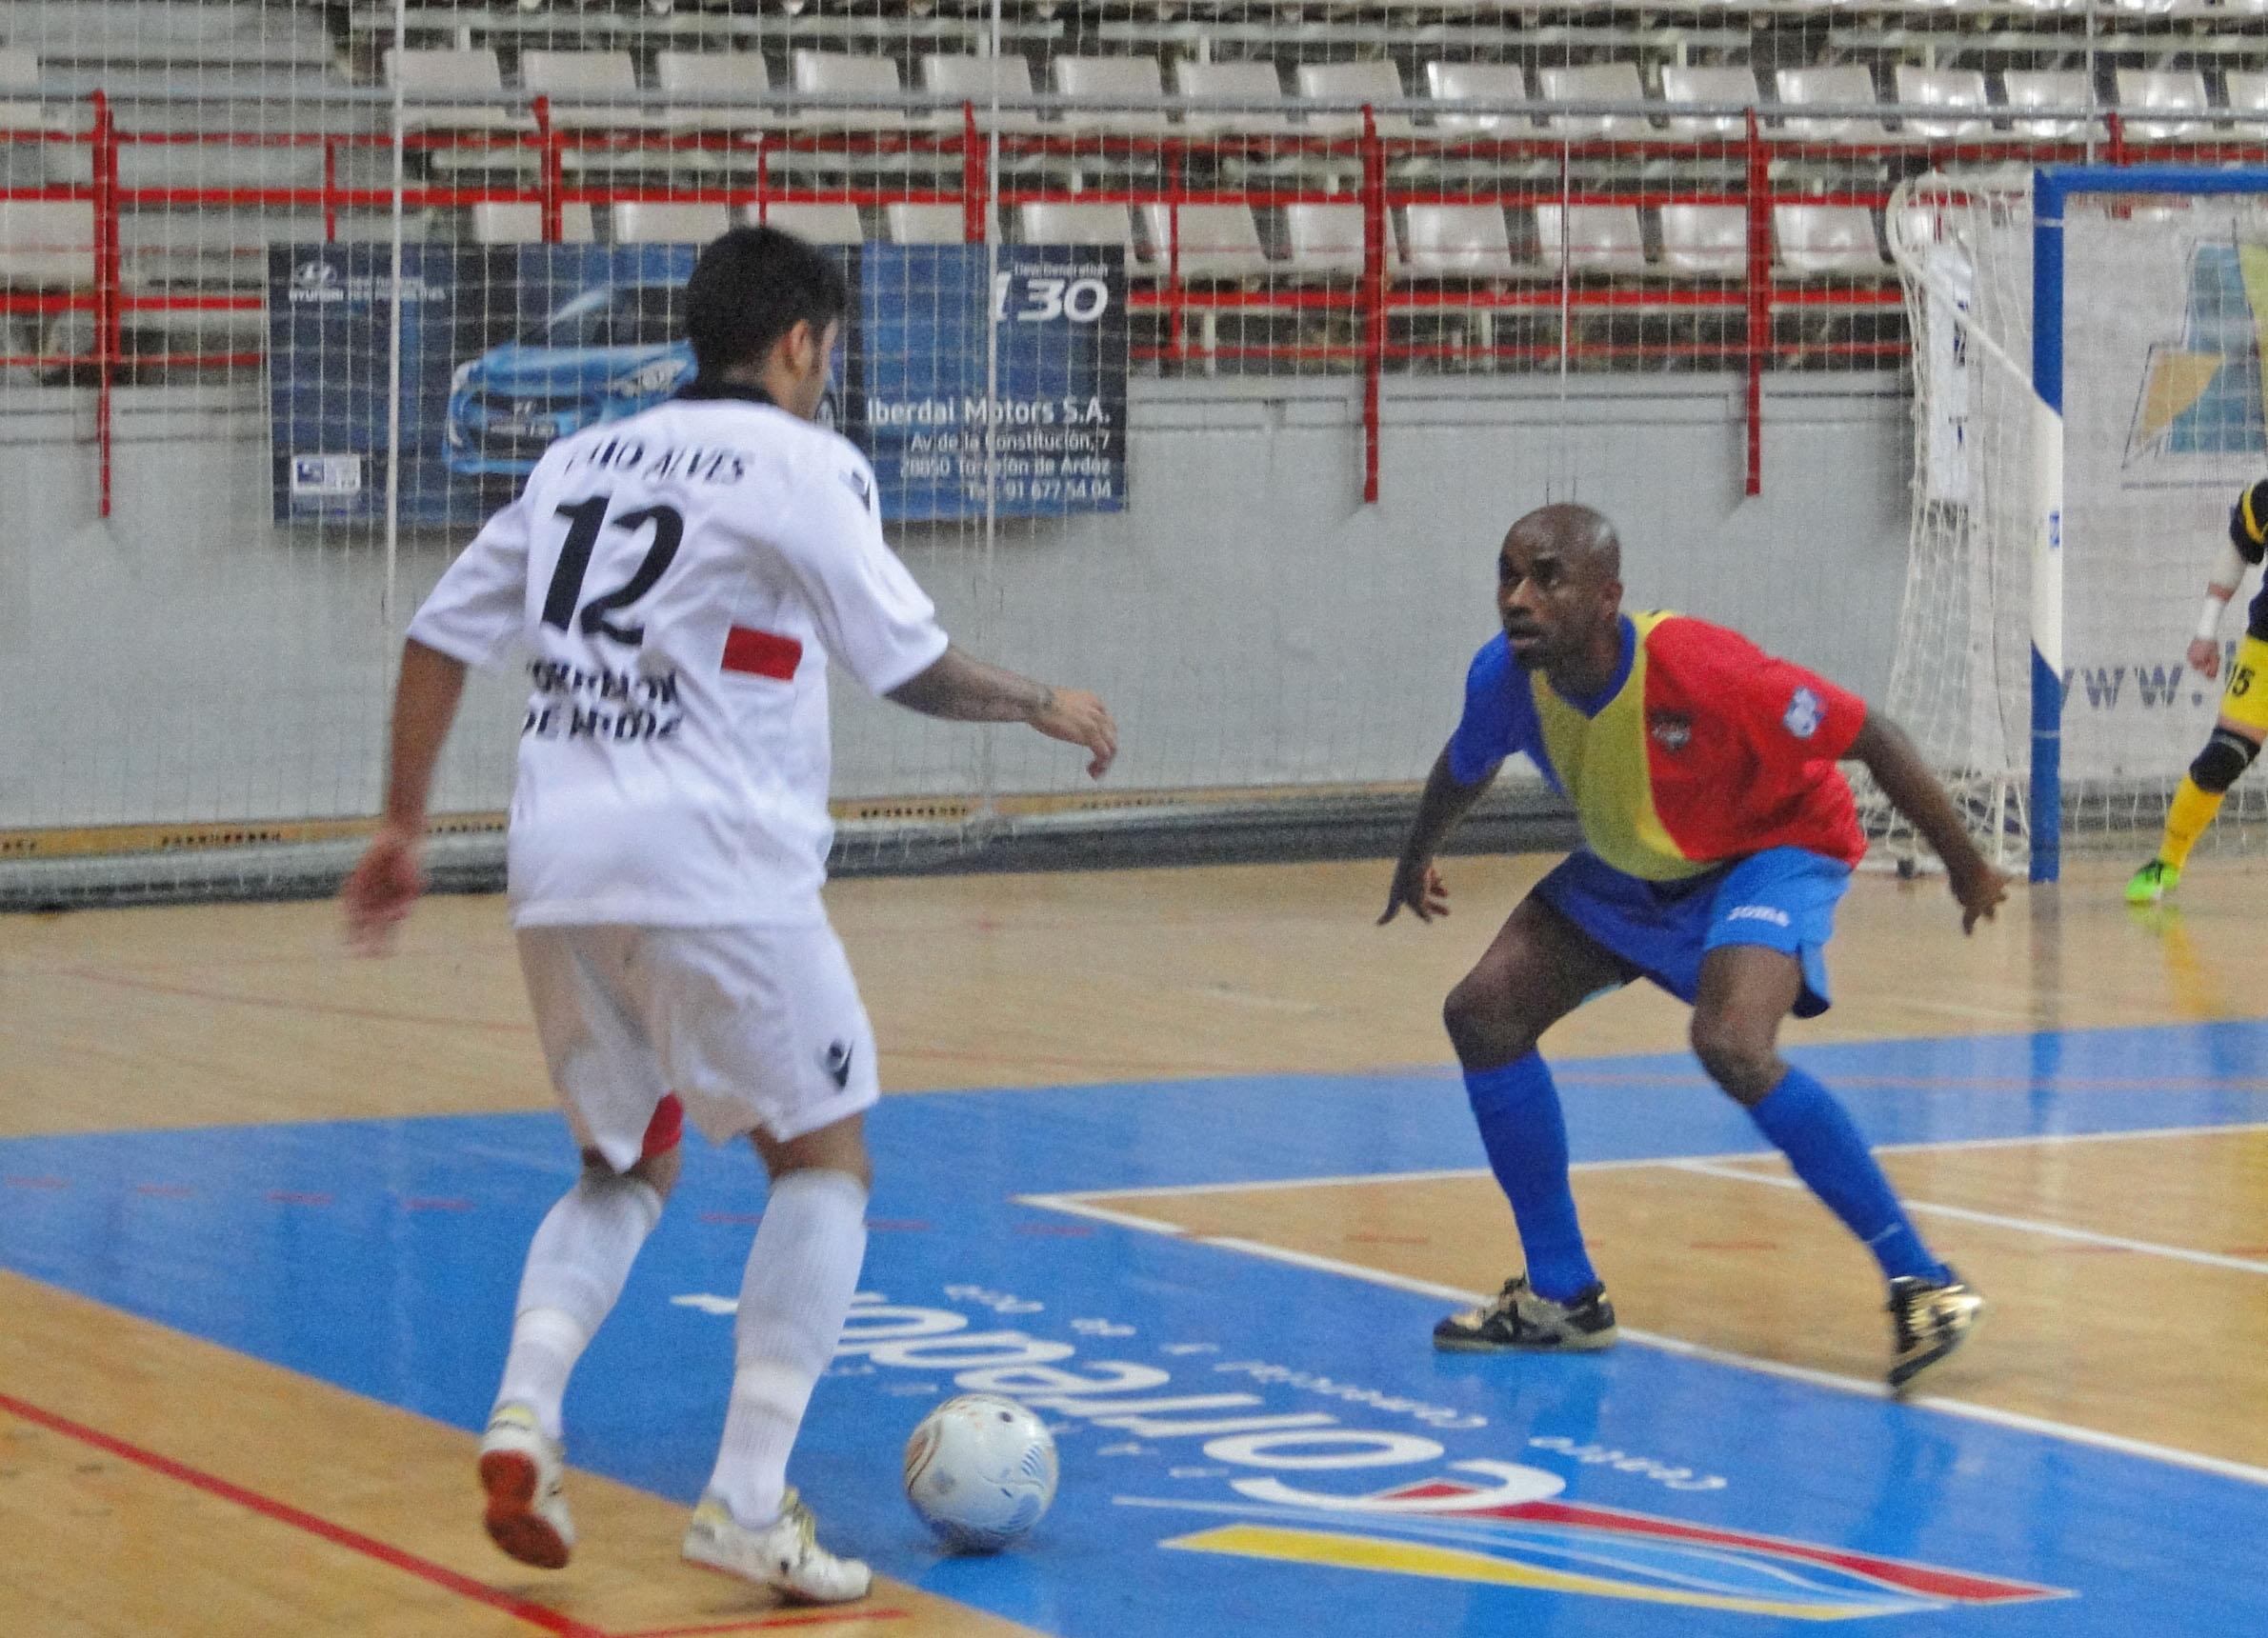 FC Andorra - Carnicer Torrejón: un partido para seguir ascendiendo en la tabla